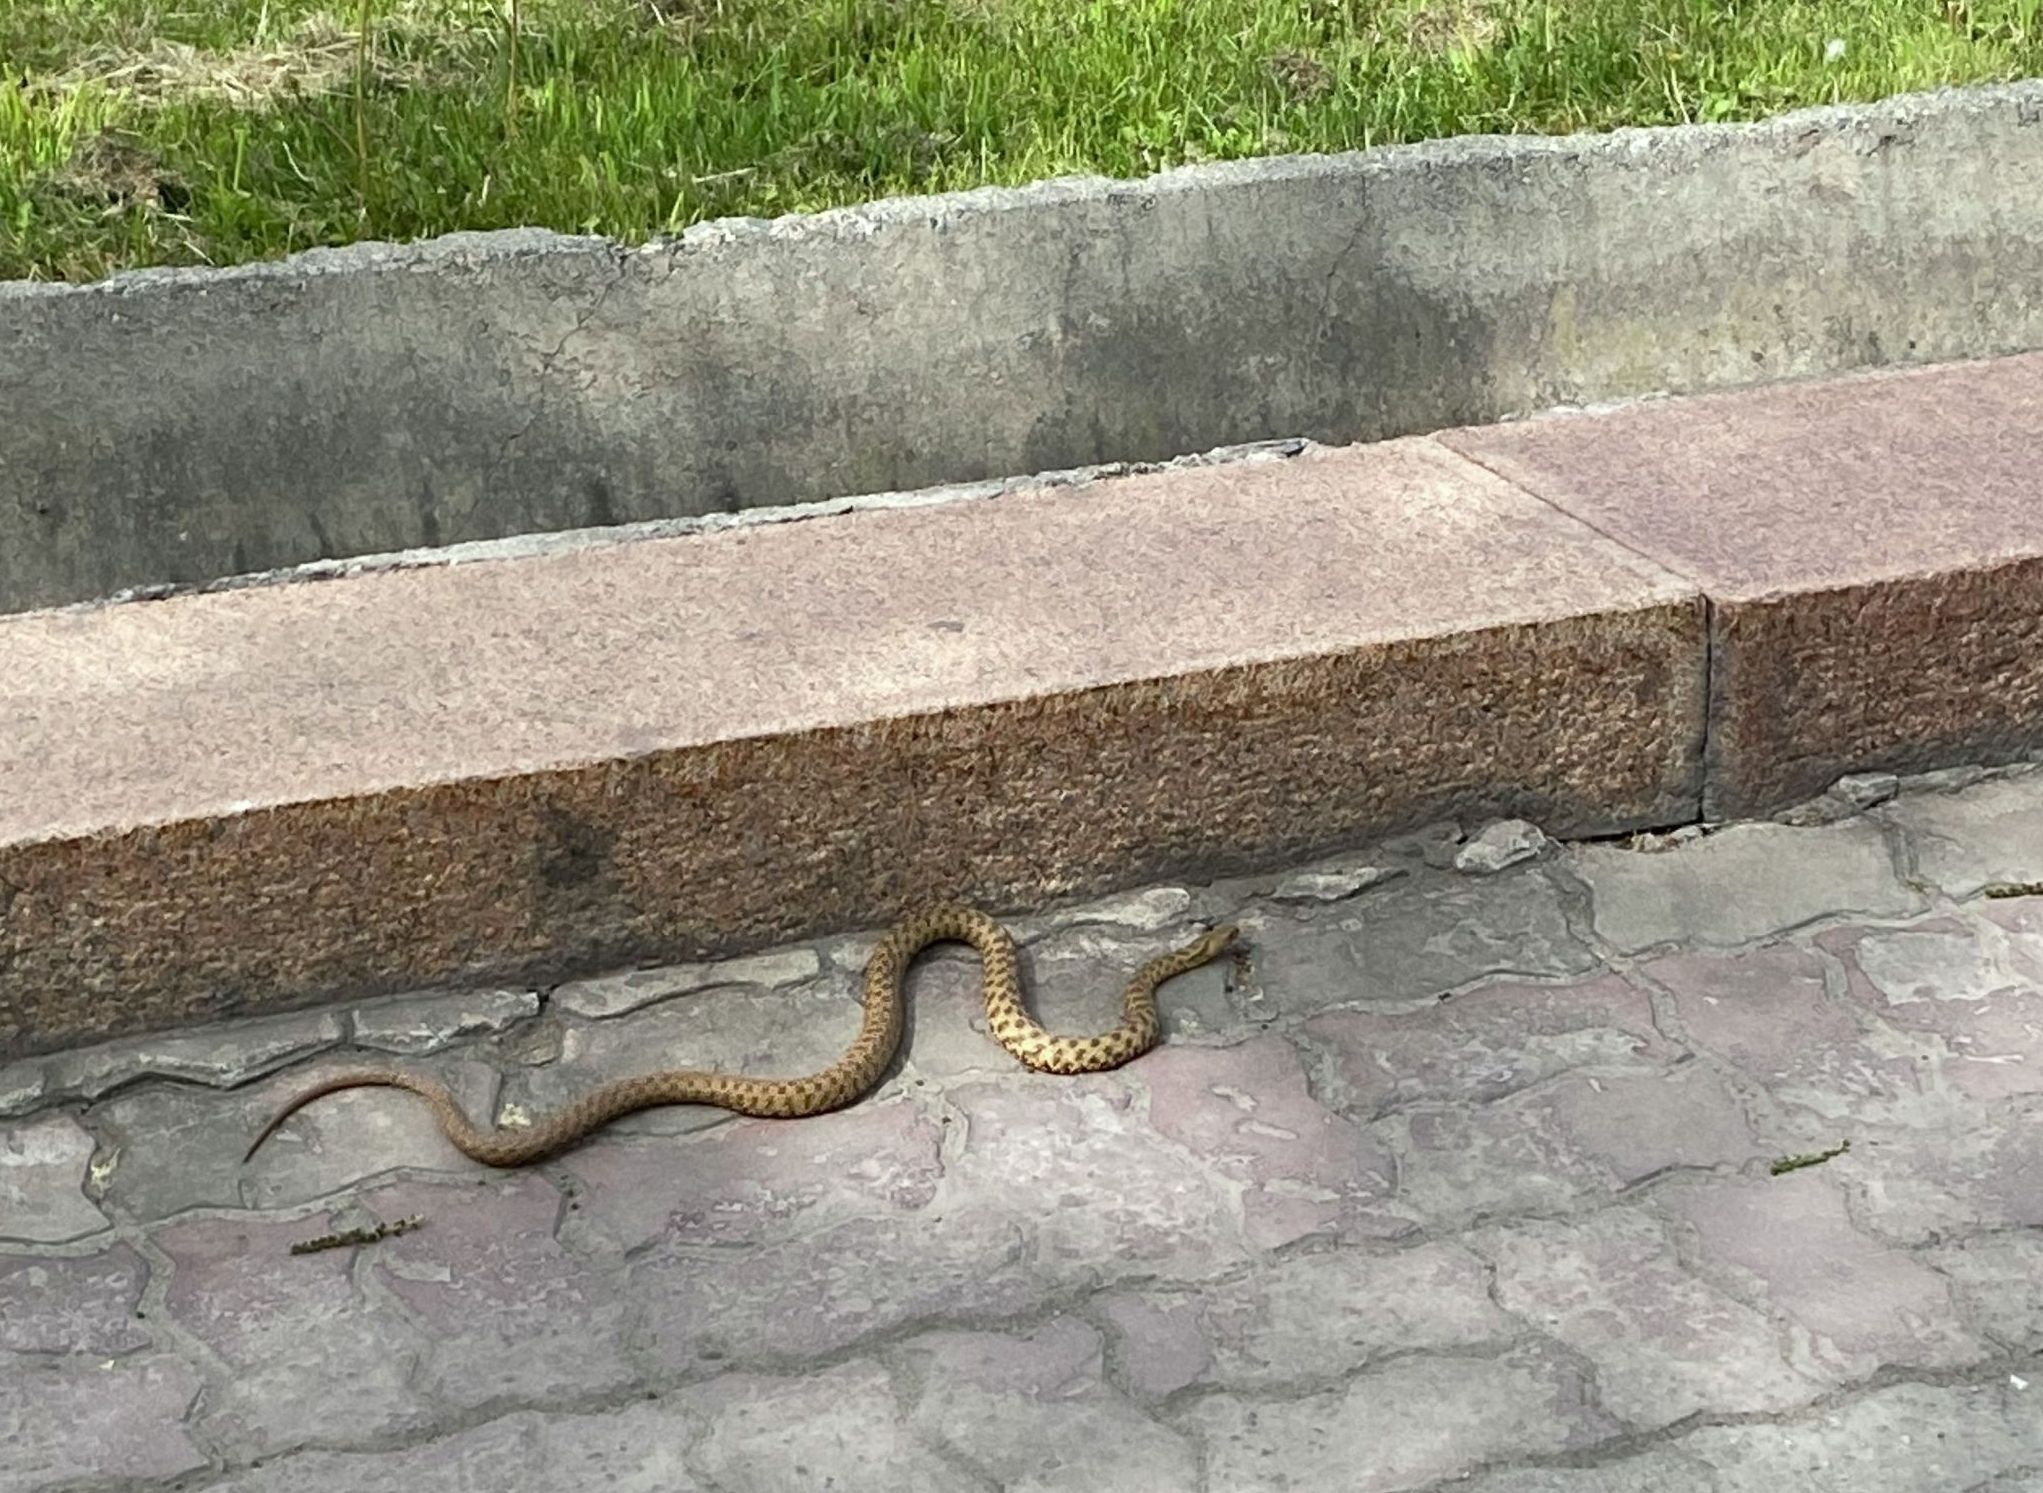 Змея на тротуаре возле белого дома в Бишкеке